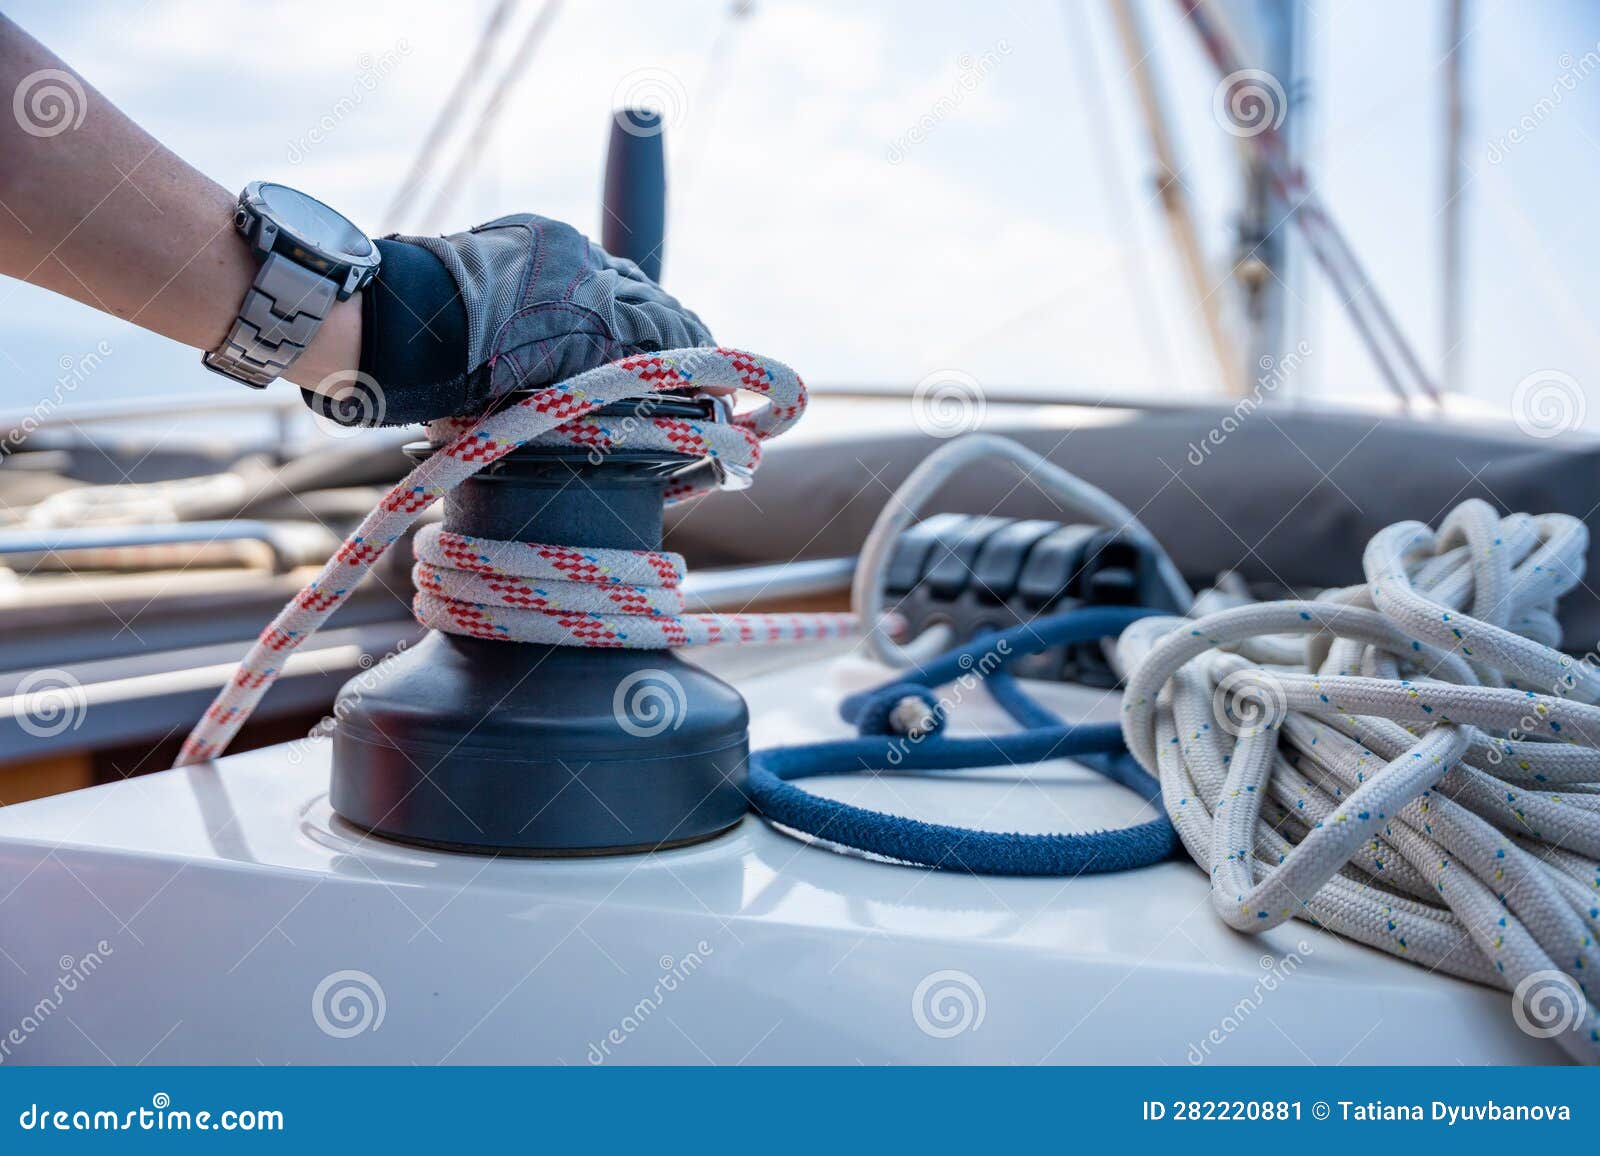 141 Man Pulling Rope Sailing Boat Stock Photos - Free & Royalty